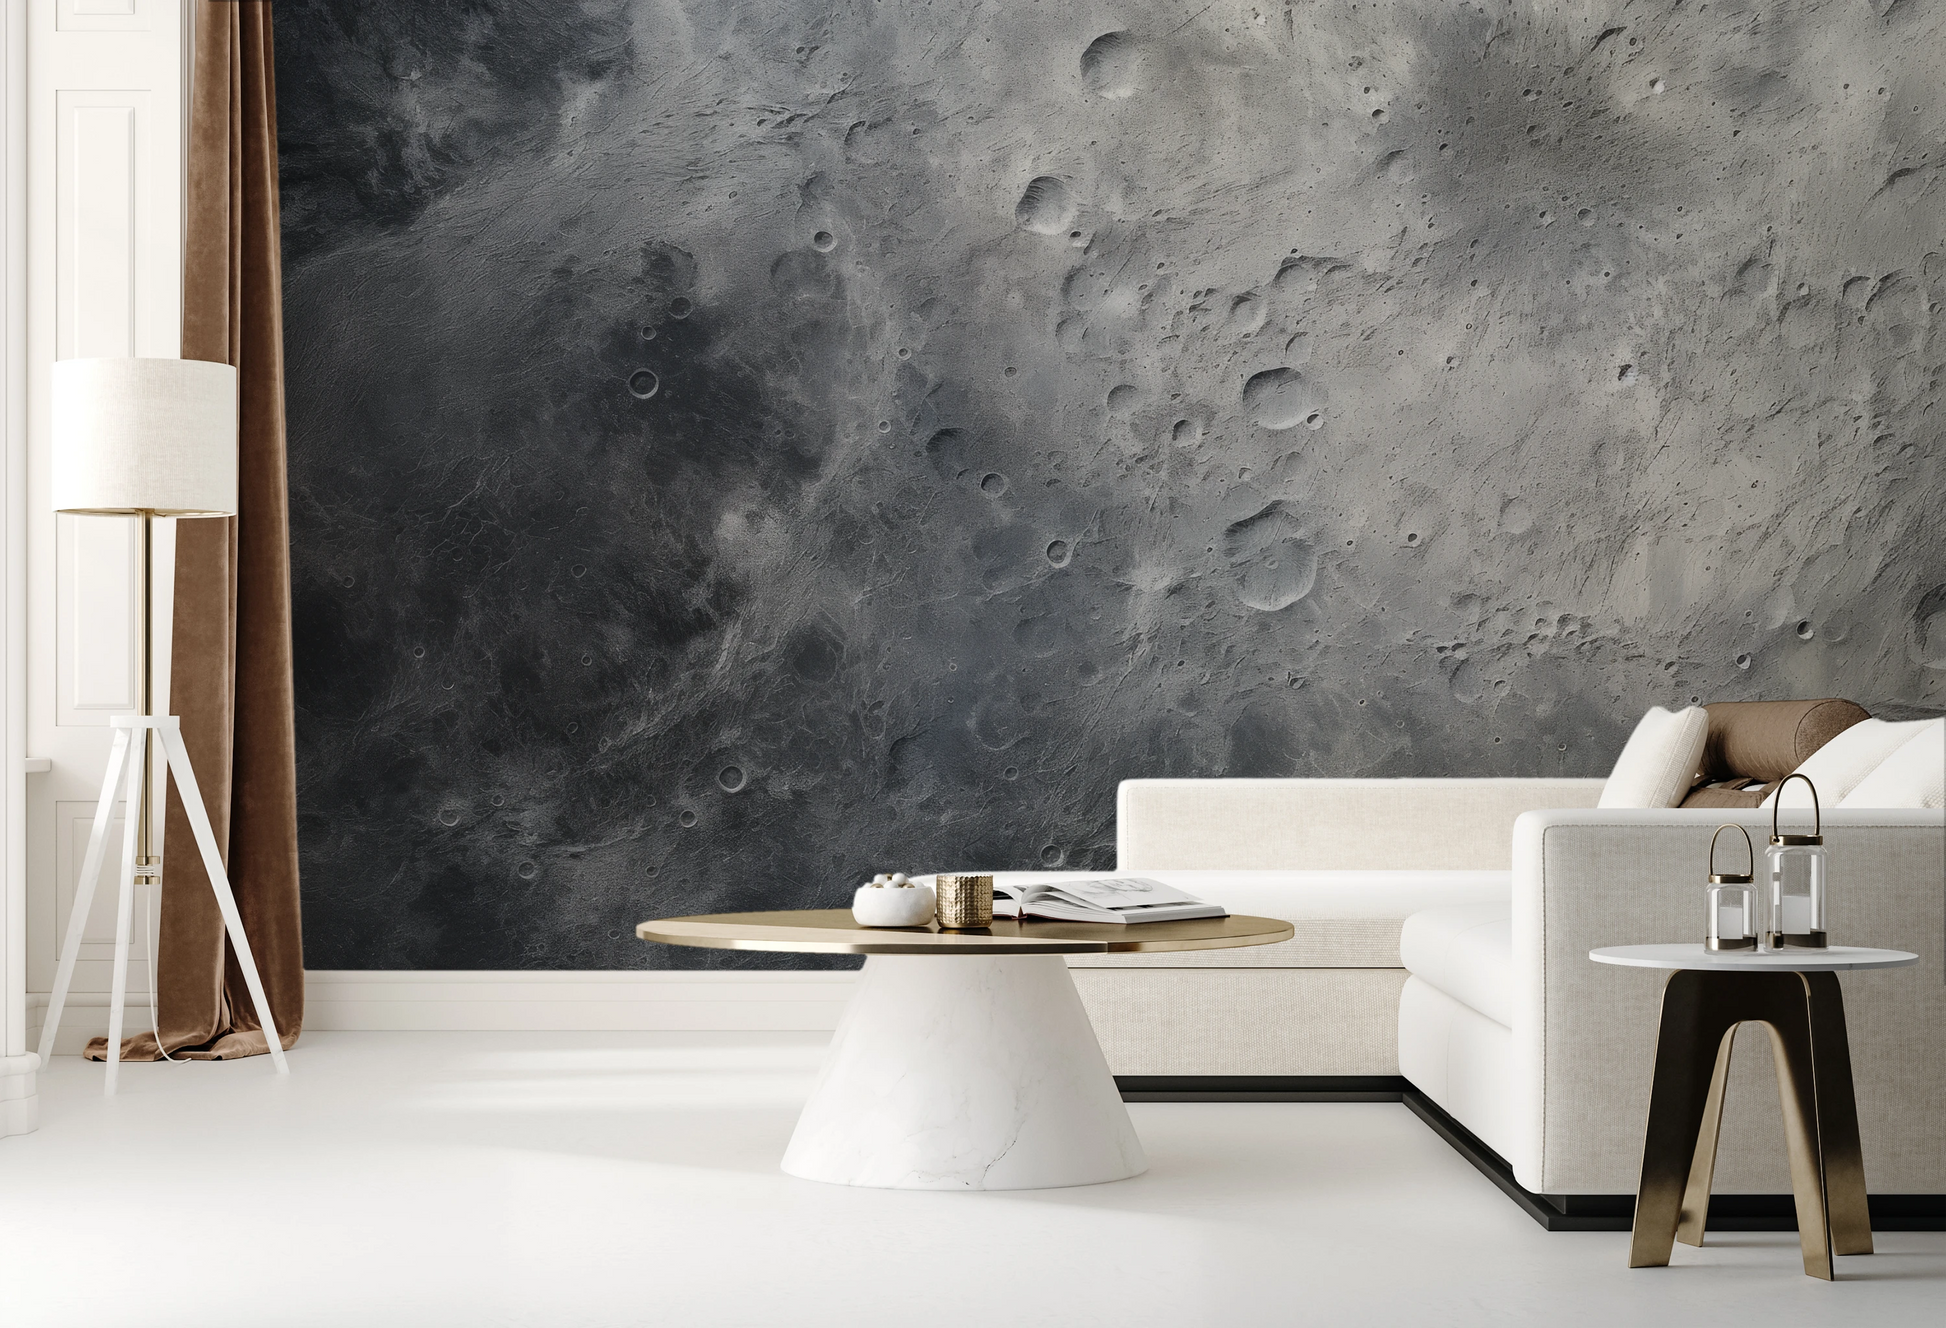 Fototapeta malowana o nazwie Moon's Monochrome #2 pokazana w aranżacji wnętrza.